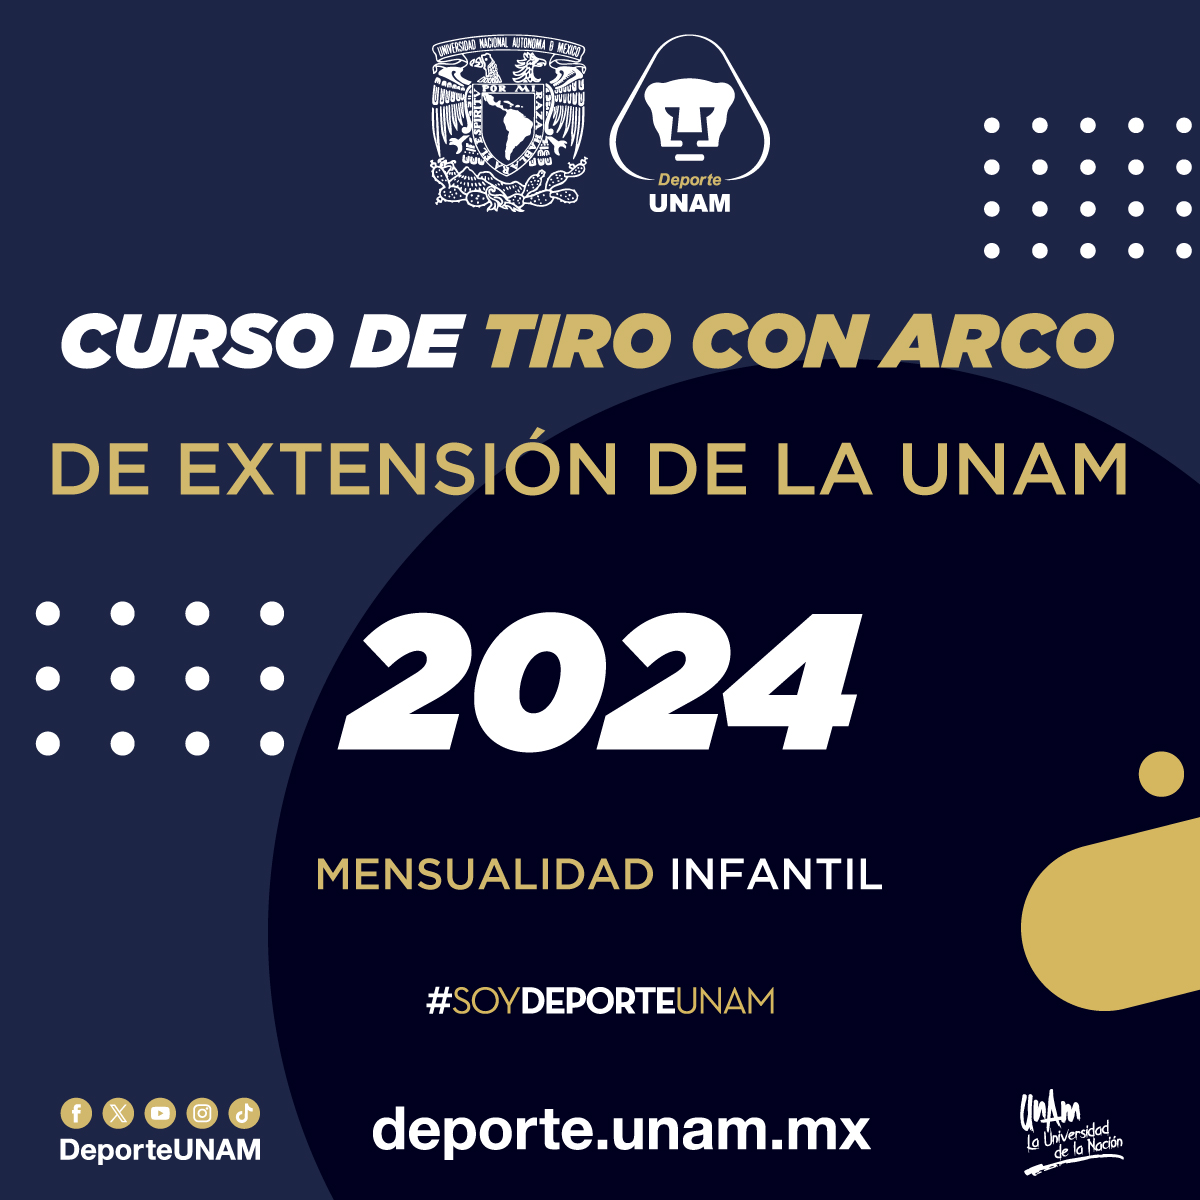 CURSO DE TIRO CON ARCO DE EXTENSIÓN DE LA UNAM 2024 MENSUALIDAD INFANTIL